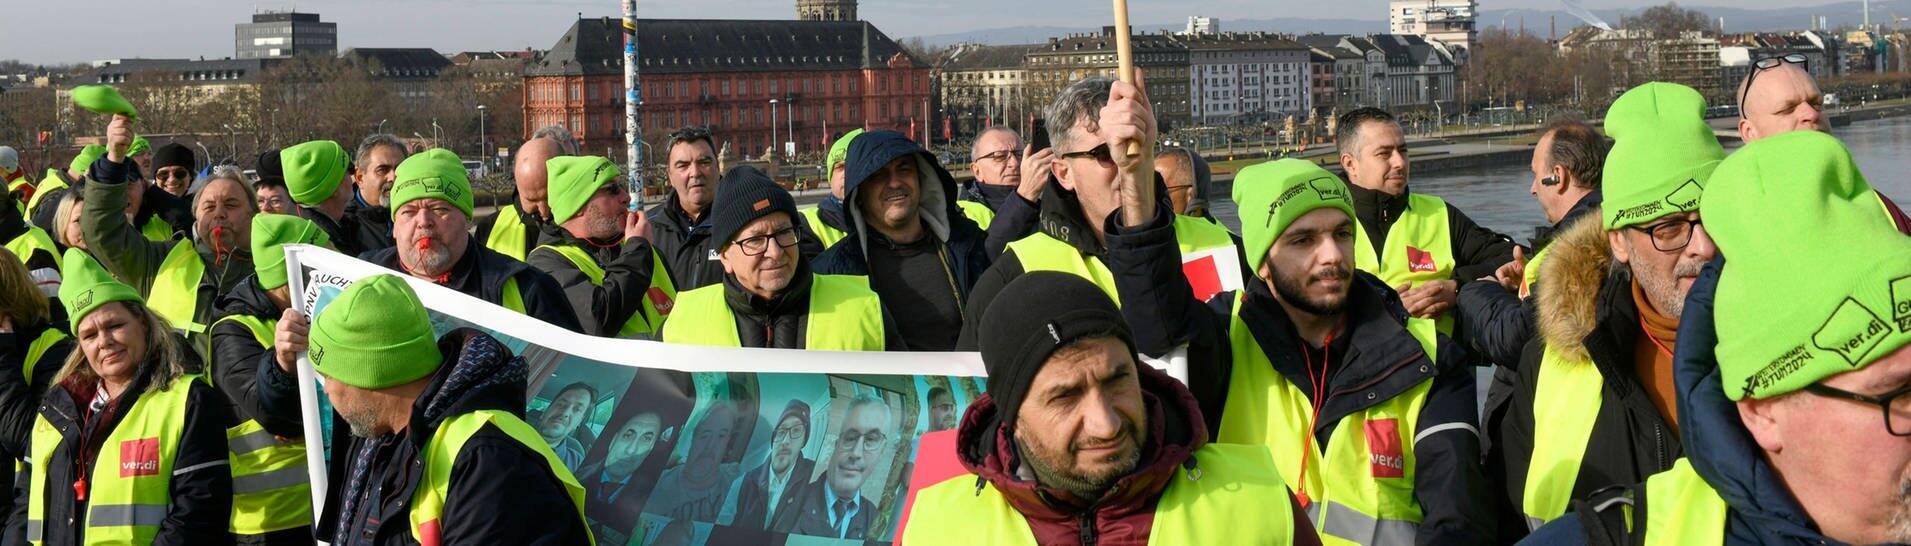 Streikende Beschäftigte im Öffentlichen Nahverkehr beim Protest in Mainz auf der Theodor-Heuss-Brücke. (Foto: IMAGO, IMAGO / HEN-FOTO)